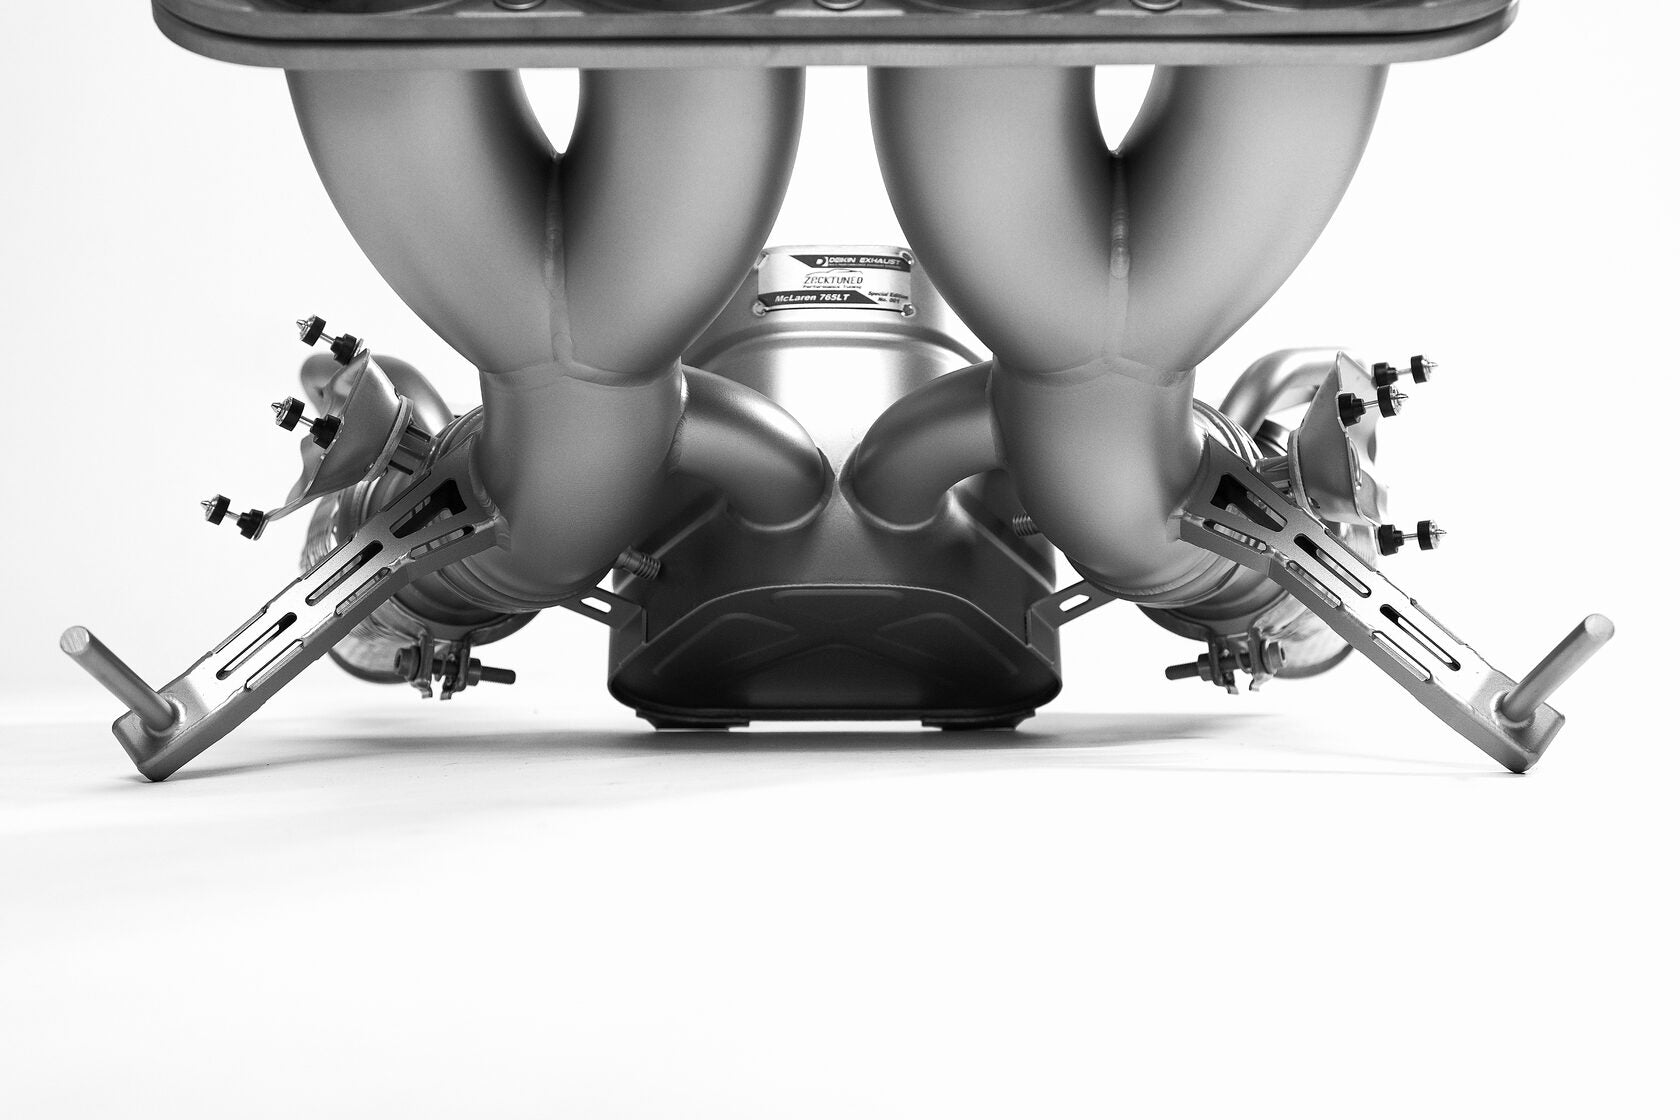 DEIKIN 10-McLaren.765LT-ES-Ti-06 Exhaust system Titan for McLaren 765LT включая даунпайп с thermal insulation HeatShield Black Ceramic Photo-23 